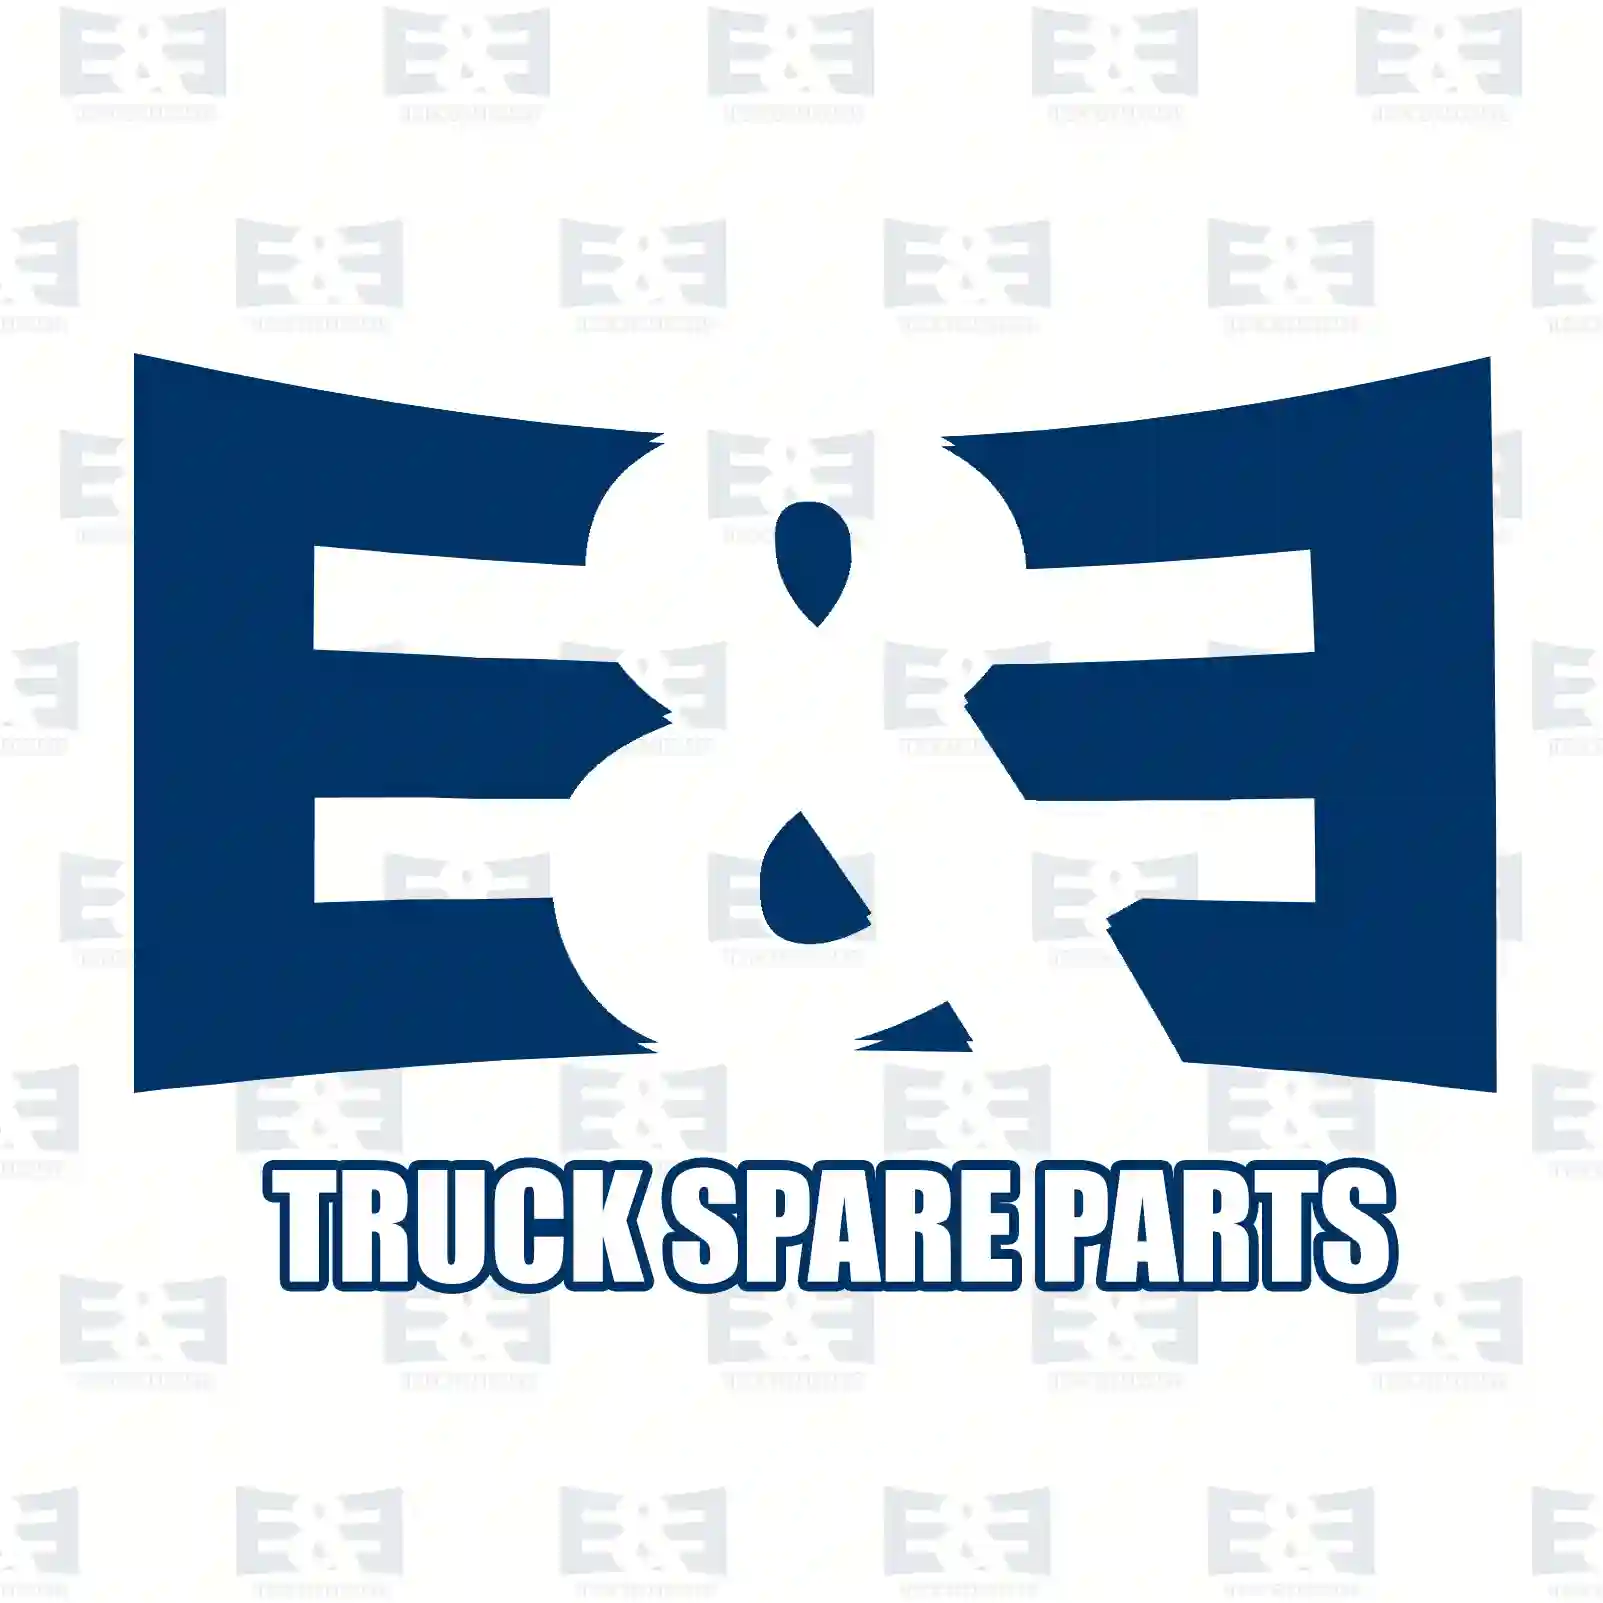 Engine hood, 2E2289783, 7901N8, 1340587080, 7901N8 ||  2E2289783 E&E Truck Spare Parts | Truck Spare Parts, Auotomotive Spare Parts Engine hood, 2E2289783, 7901N8, 1340587080, 7901N8 ||  2E2289783 E&E Truck Spare Parts | Truck Spare Parts, Auotomotive Spare Parts